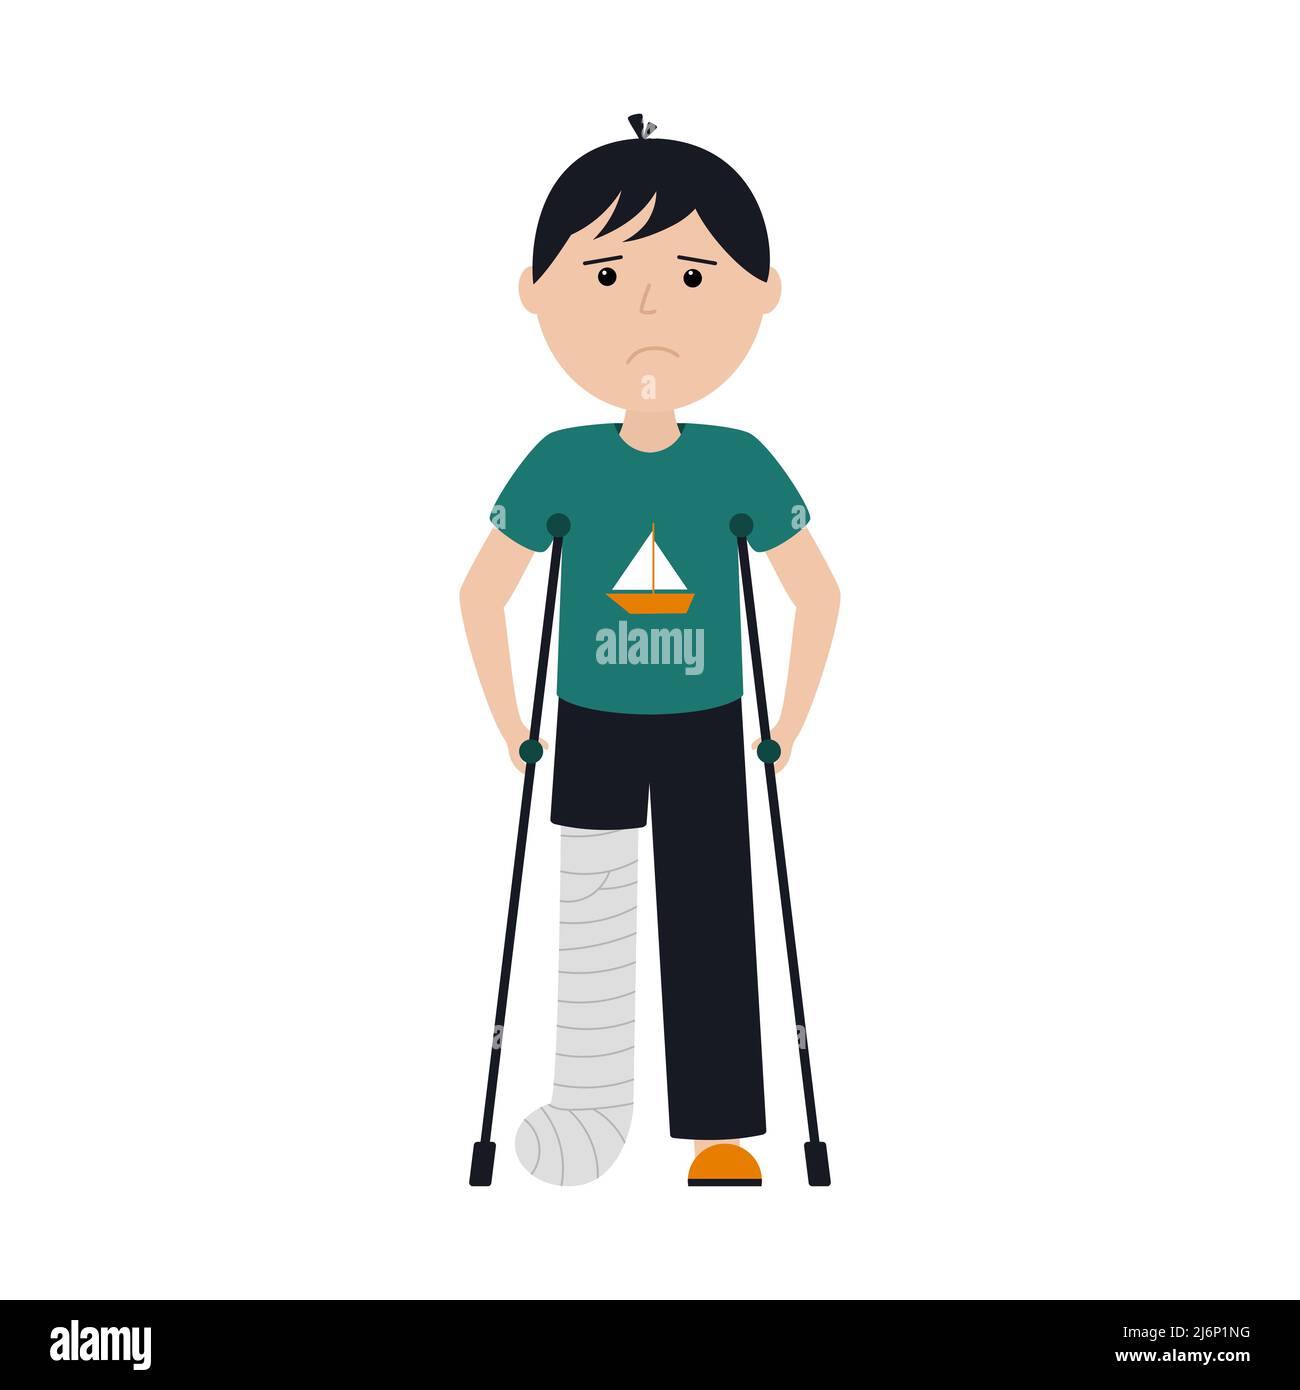 Ein trauriger Junge in T-Shirt und Hose steht mit gebrochenem Bein auf Krücken. Die Beinfraktur wurde mit einem Guss fixiert. Farbvektordarstellung mit einem Kind Stock Vektor